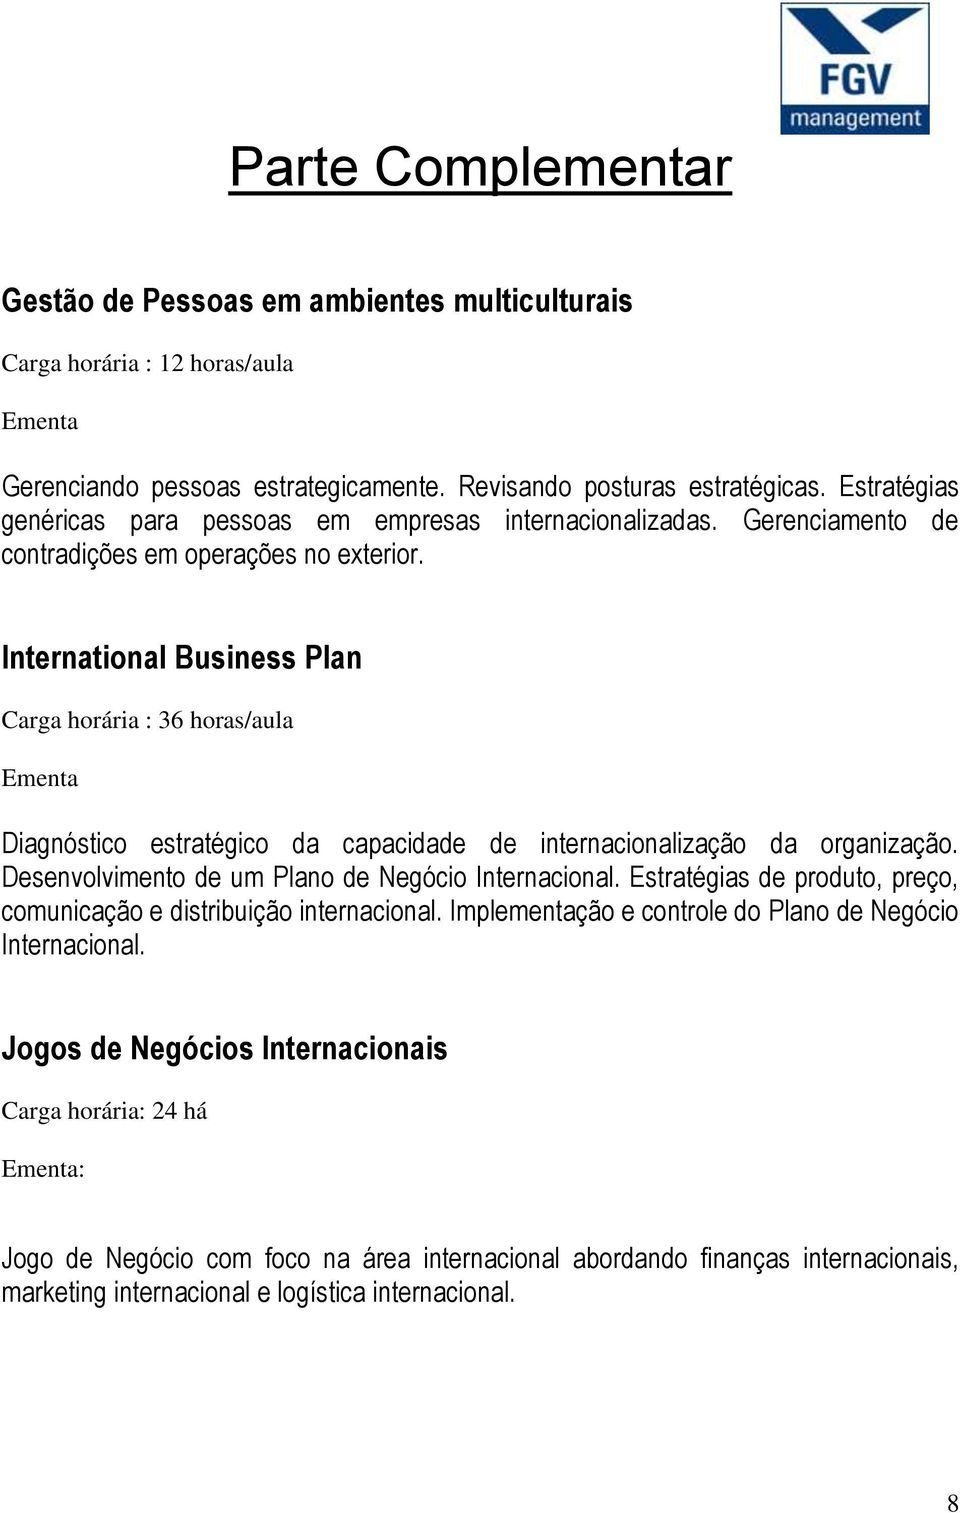 International Business Plan Carga horária : 36 horas/aula Ementa Diagnóstico estratégico da capacidade de internacionalização da organização. Desenvolvimento de um Plano de Negócio Internacional.